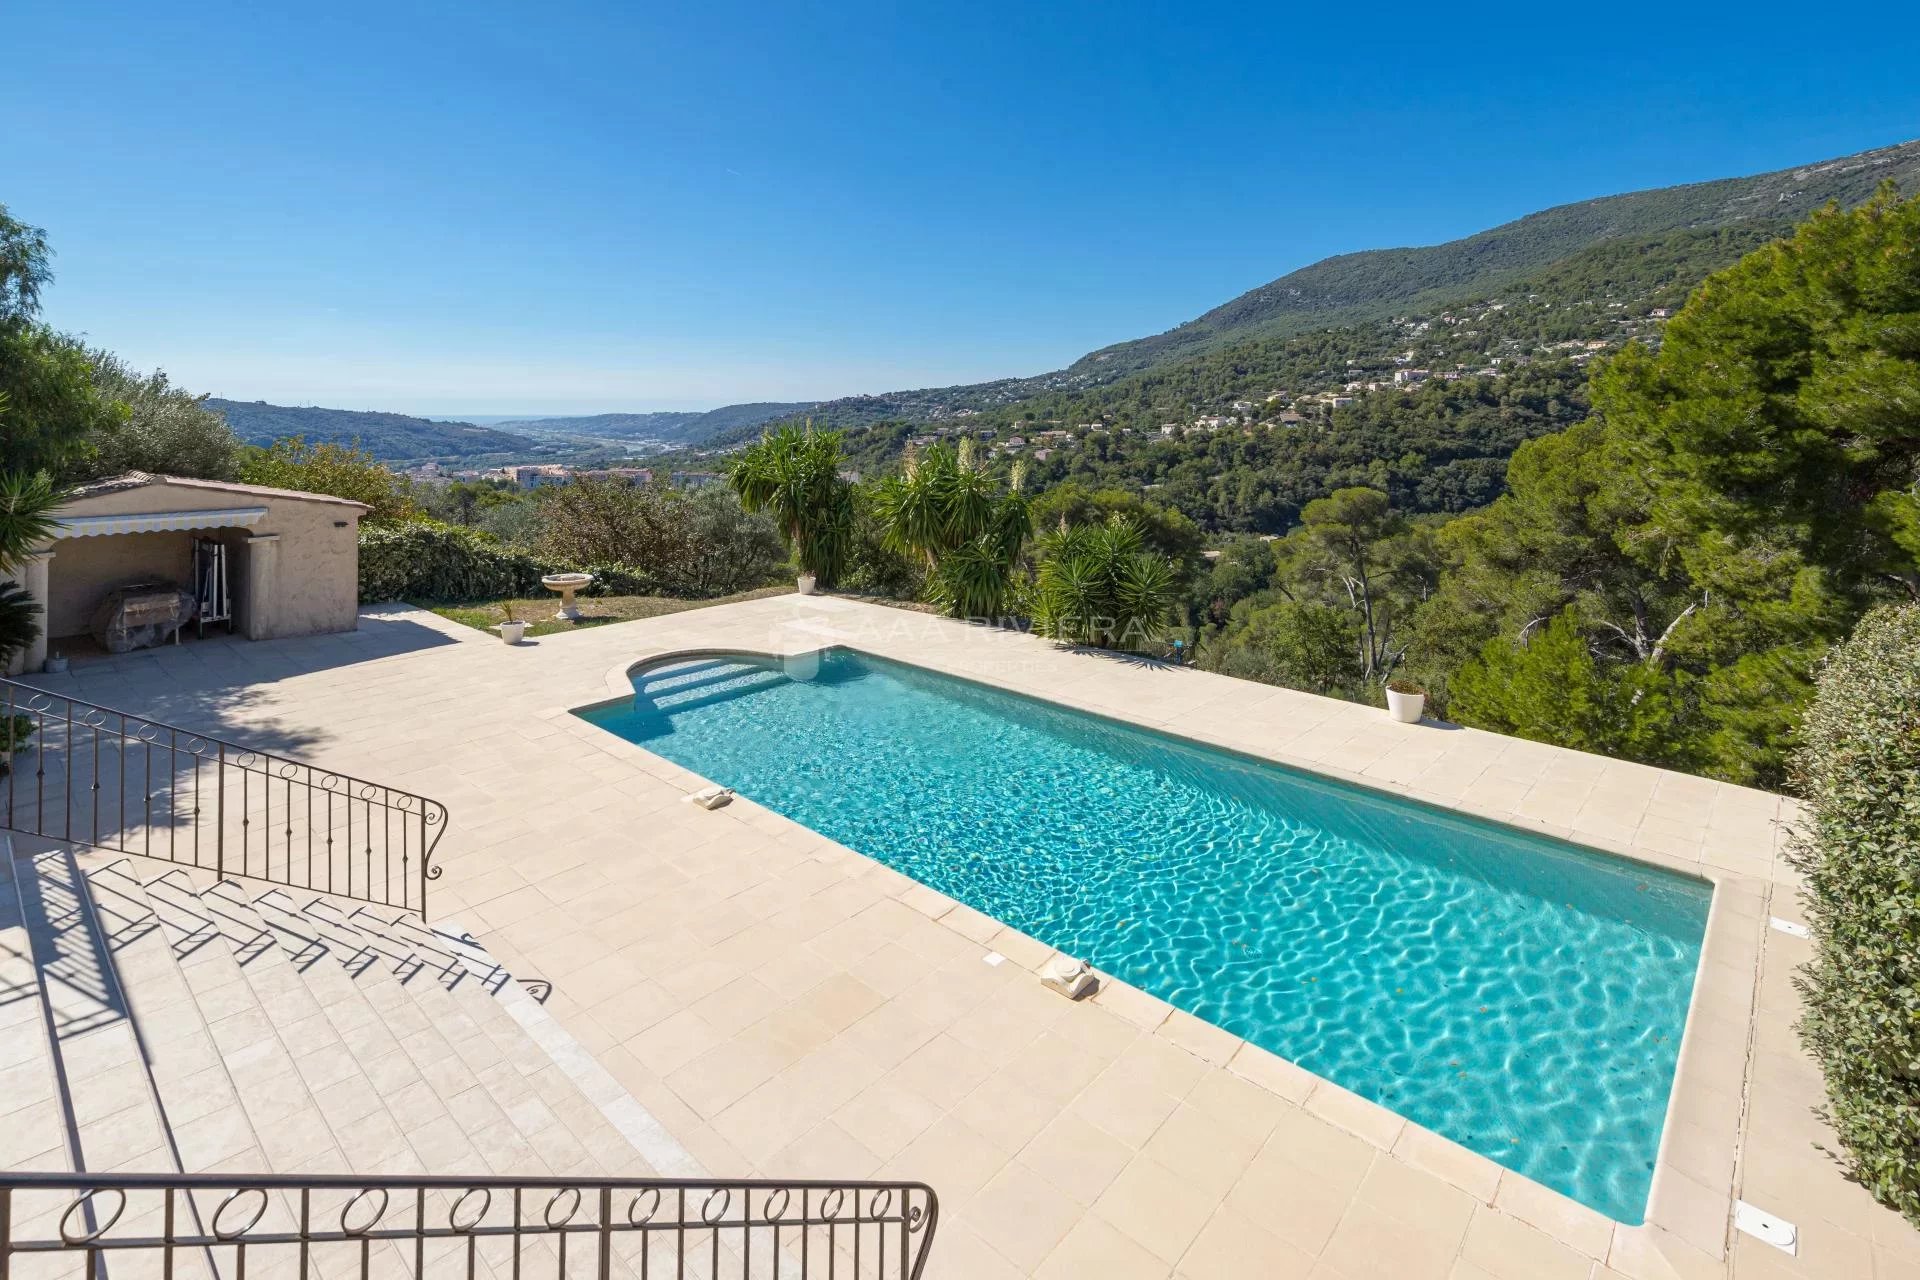 UNDER OFFER -CARROS - Nyere villa med 6 soverom, svømmebasseng og panorama utsikt i Nice bakland